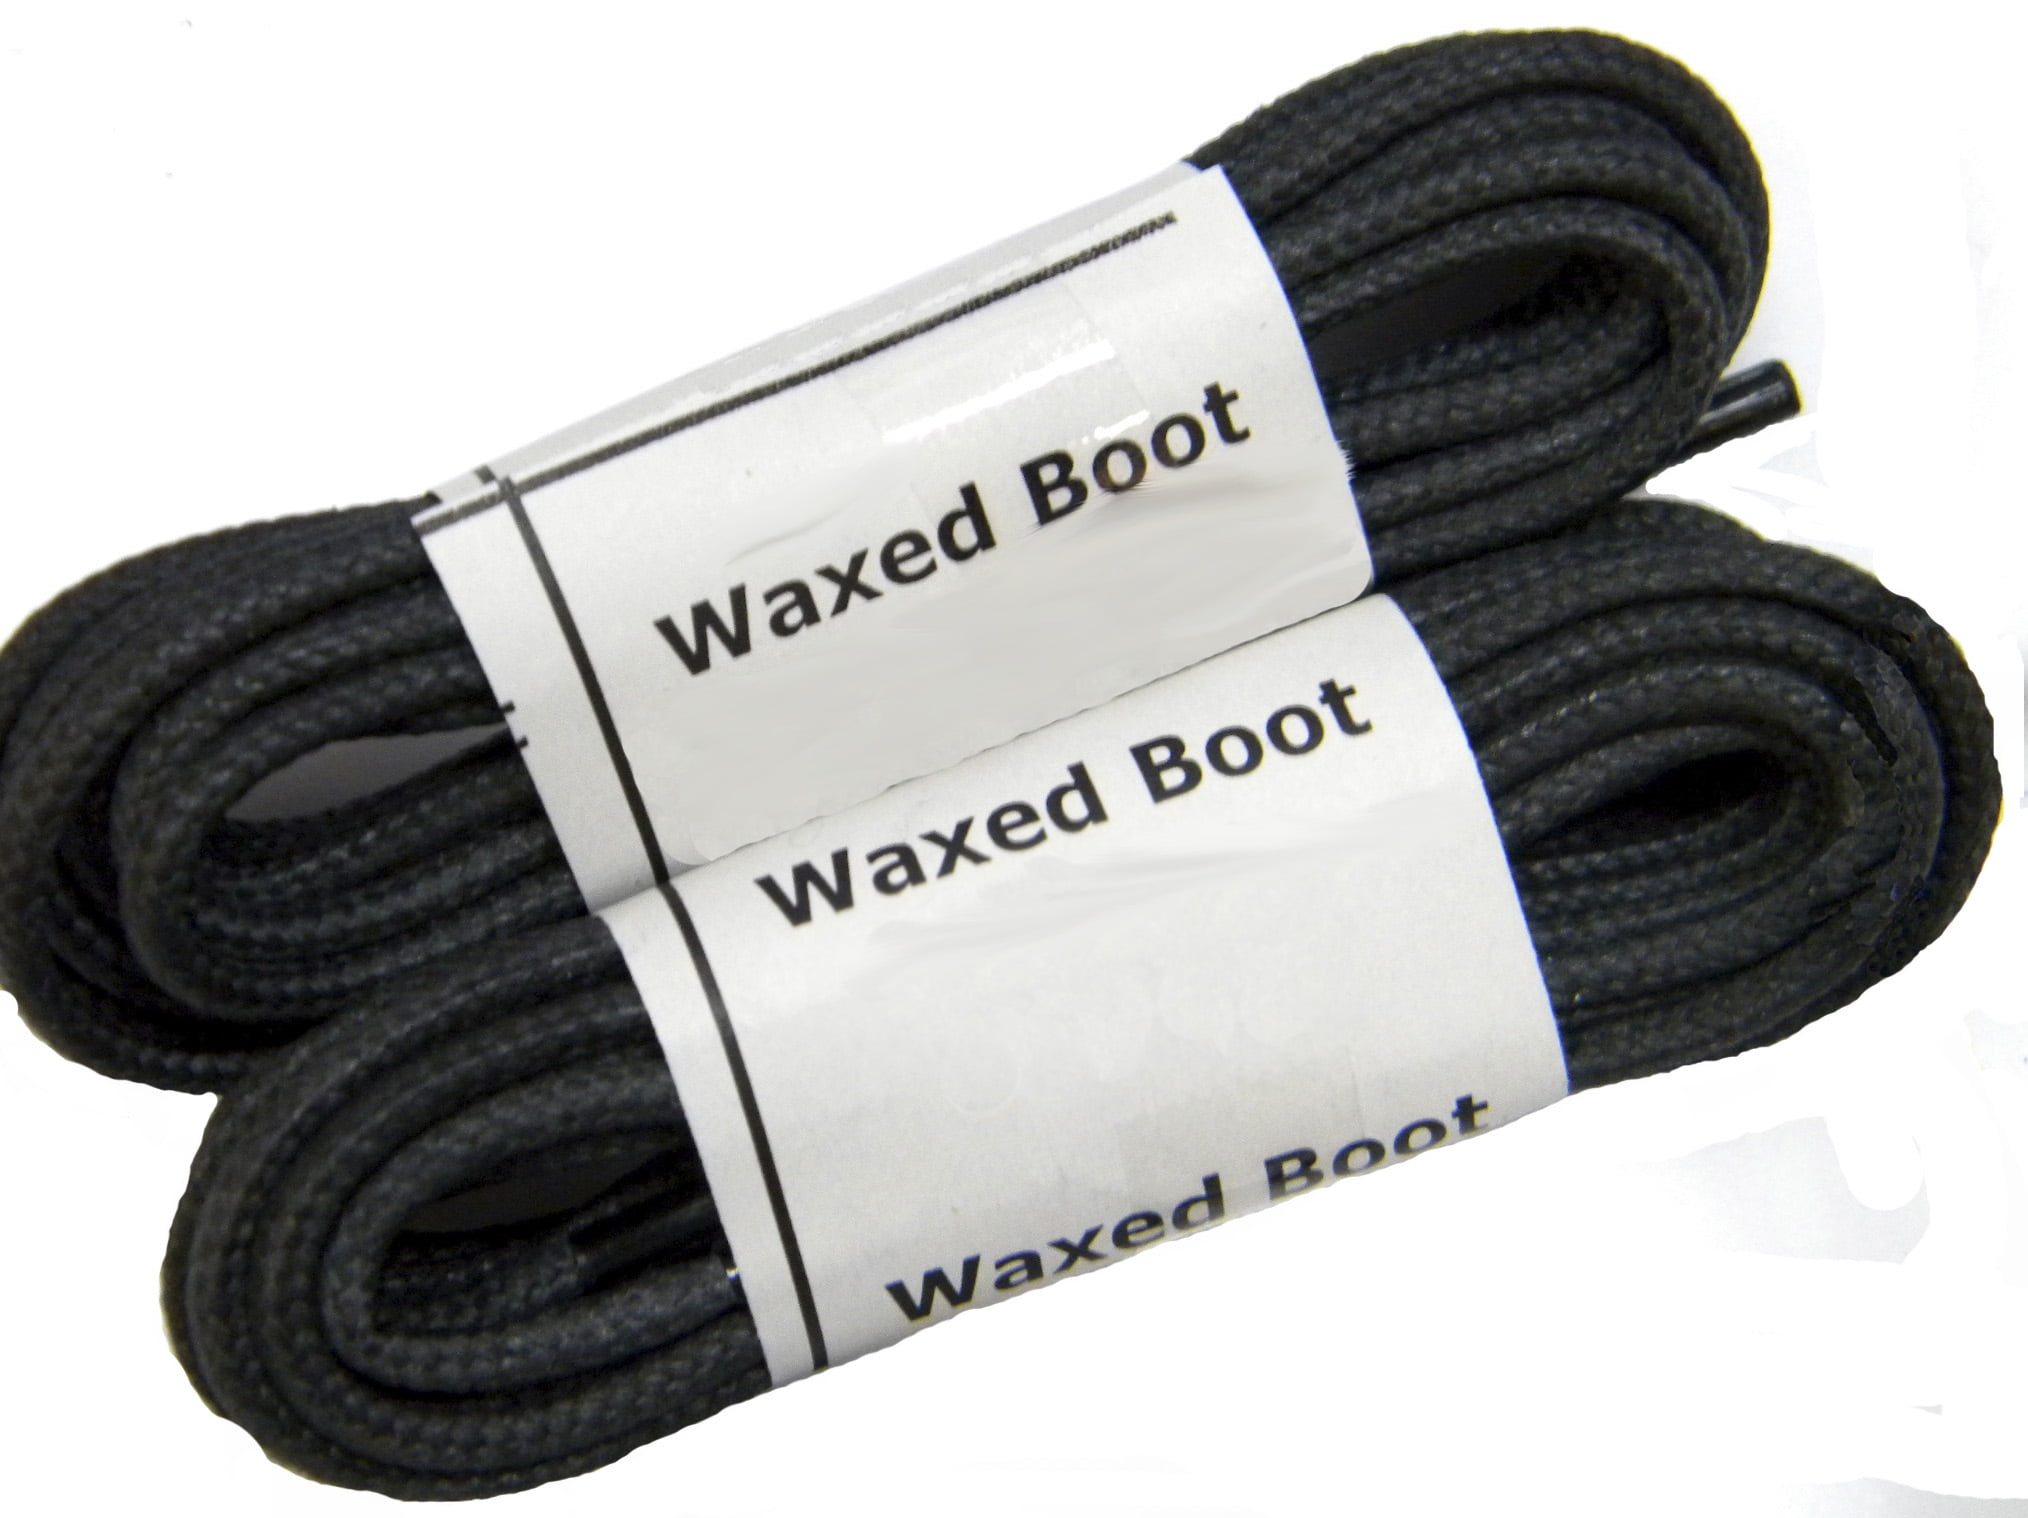 *2 Pair Pack* proBOOT tm Rugged Wear Longlasting Boot Shoelaces Shoestrings 